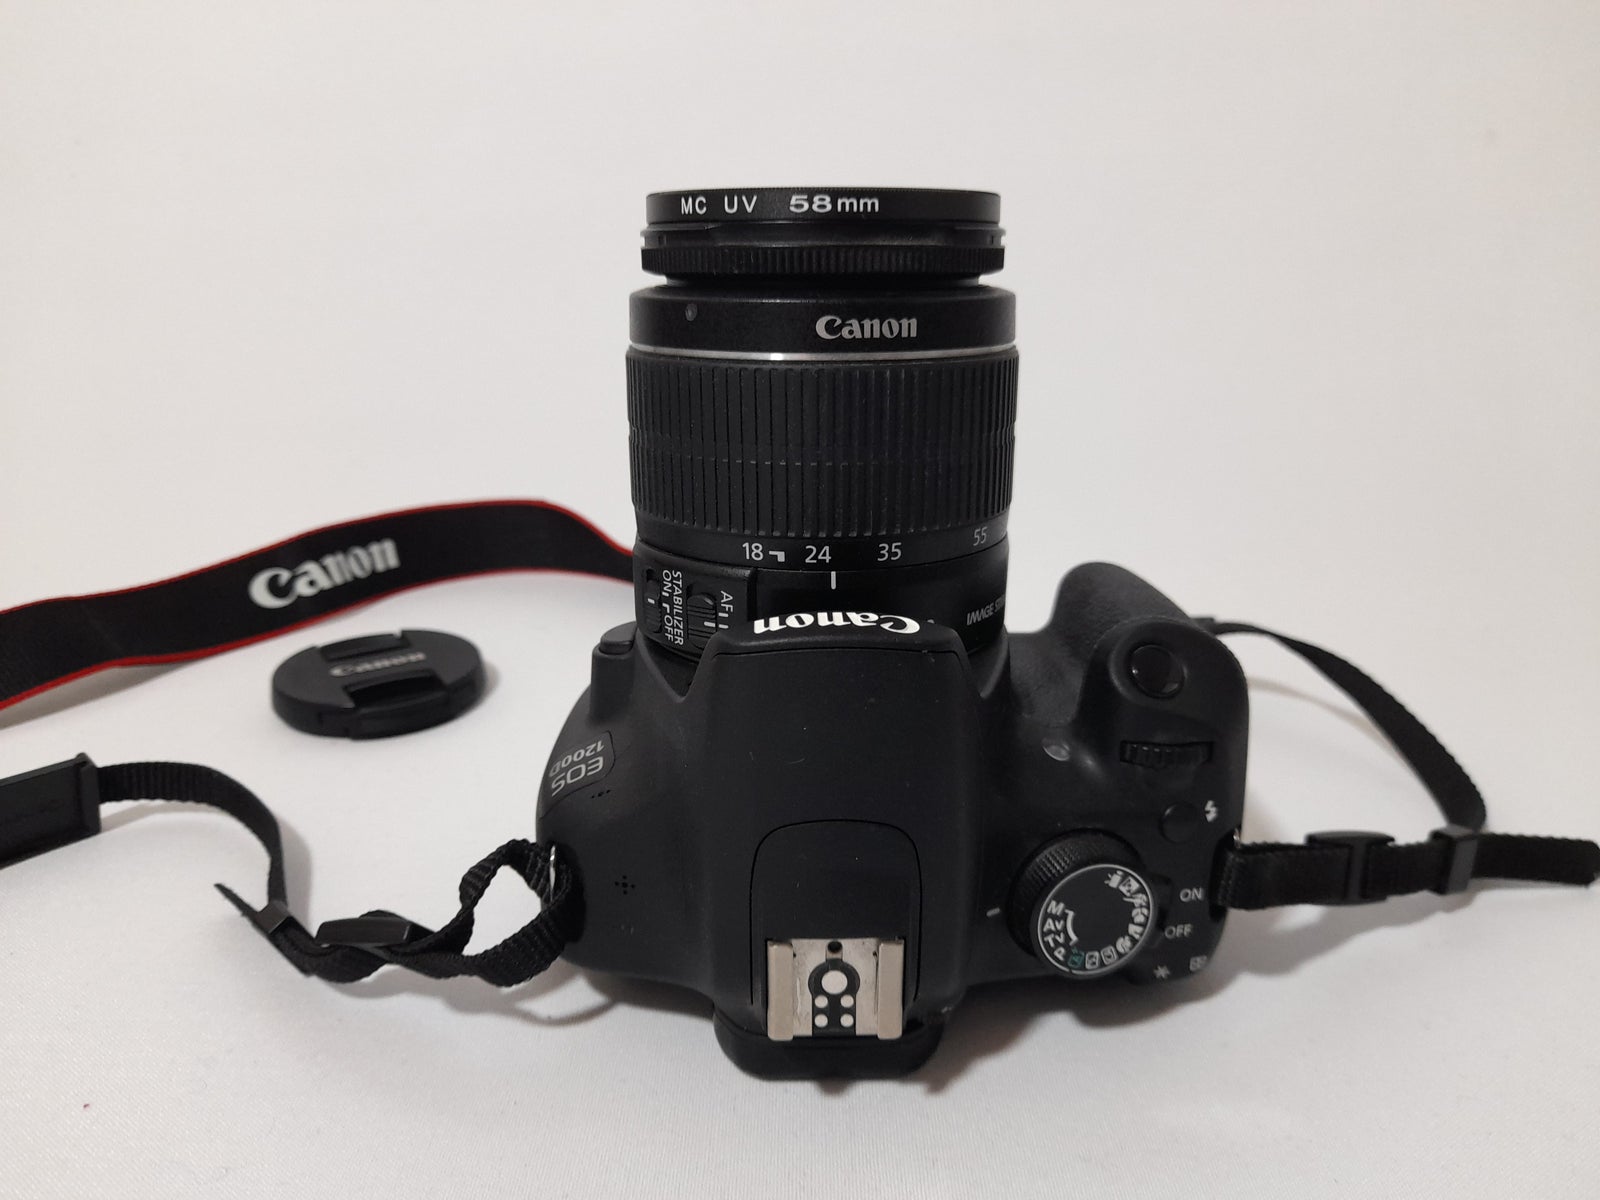 Canon, EOS 1200D, 18 megapixels